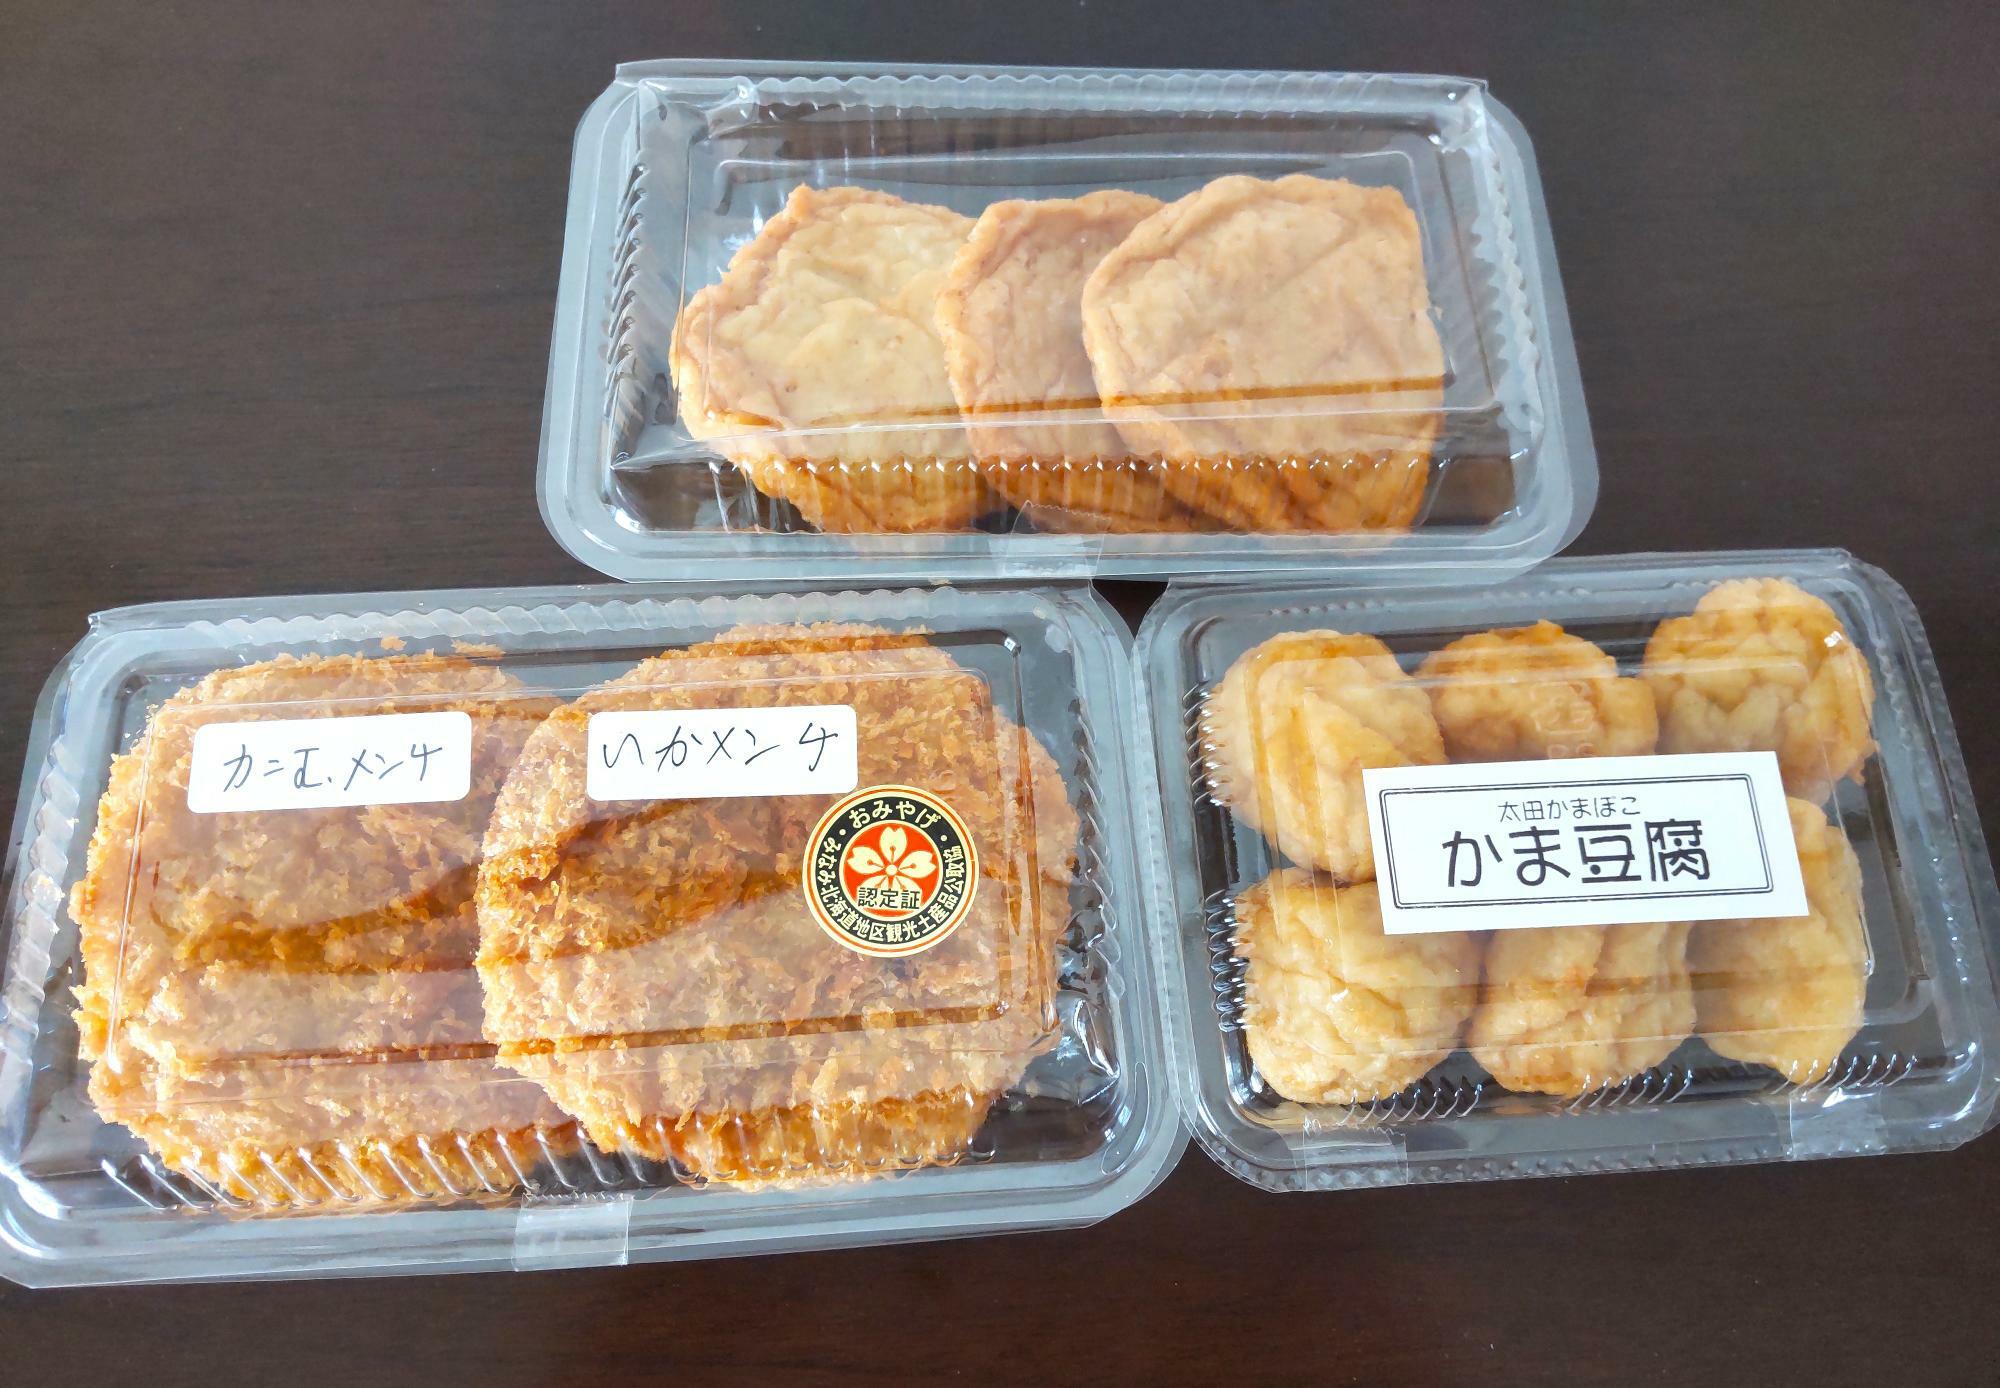 左から『カニ玉メンチ』『函館いかメンチ』『ひら天』『かま豆腐』